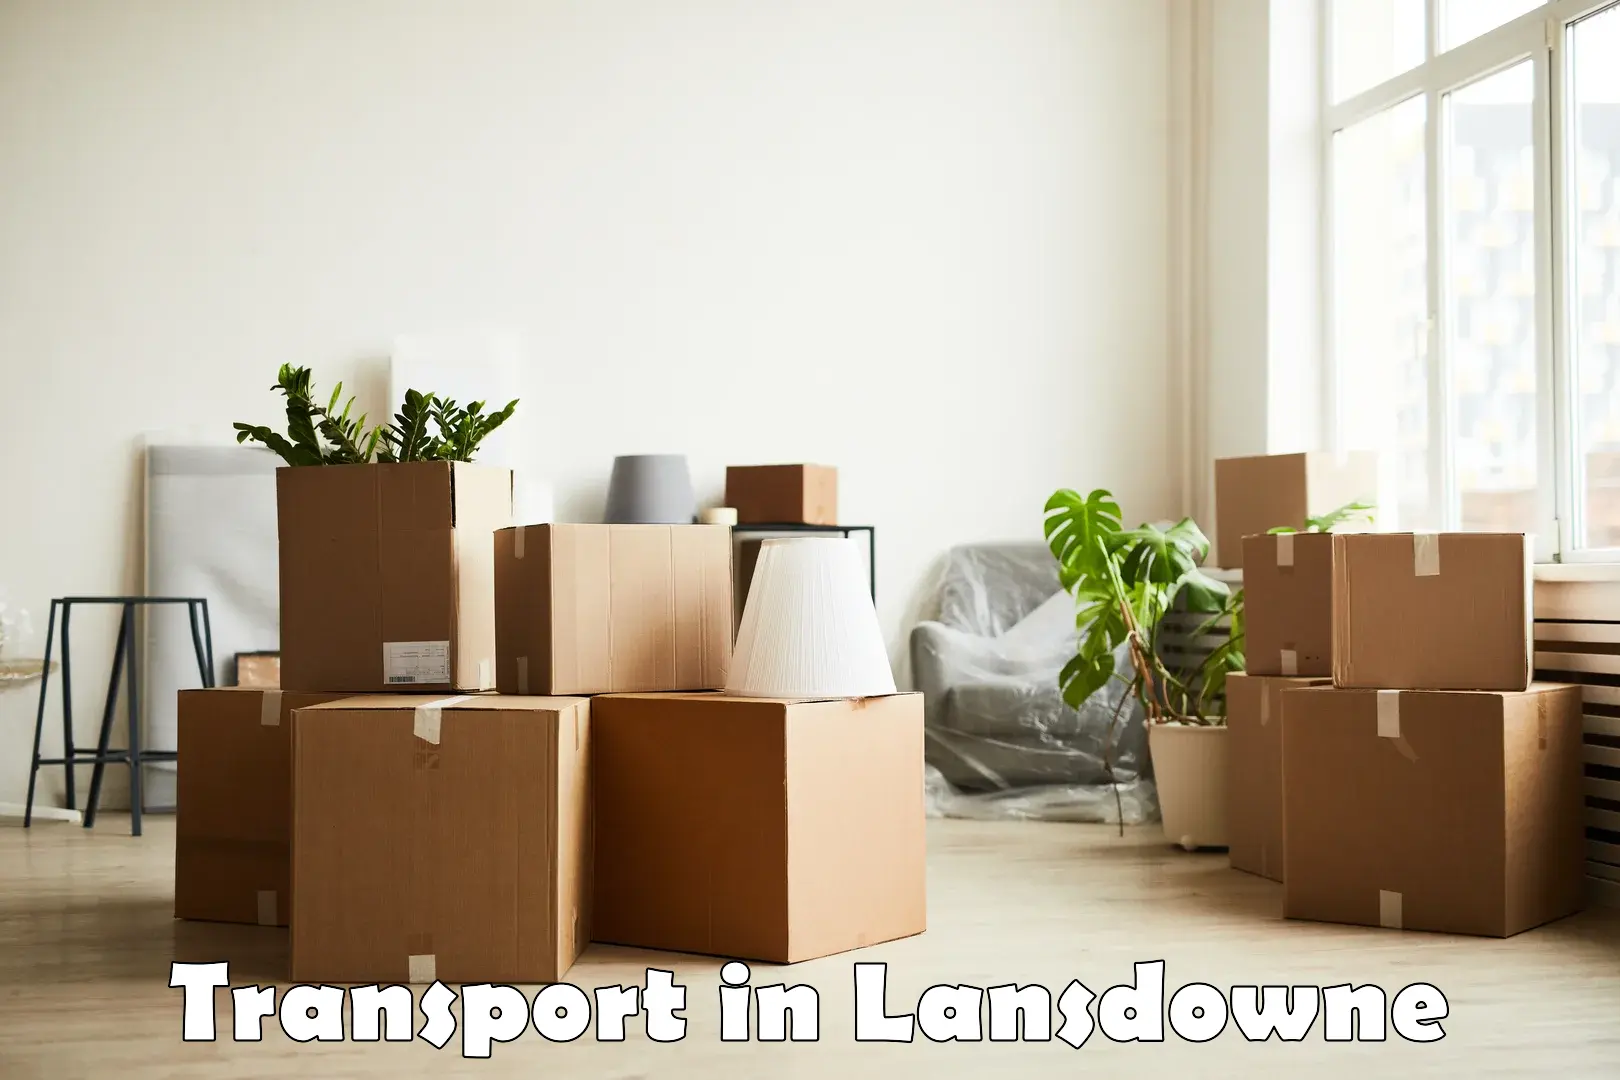 Furniture transport service in Lansdowne